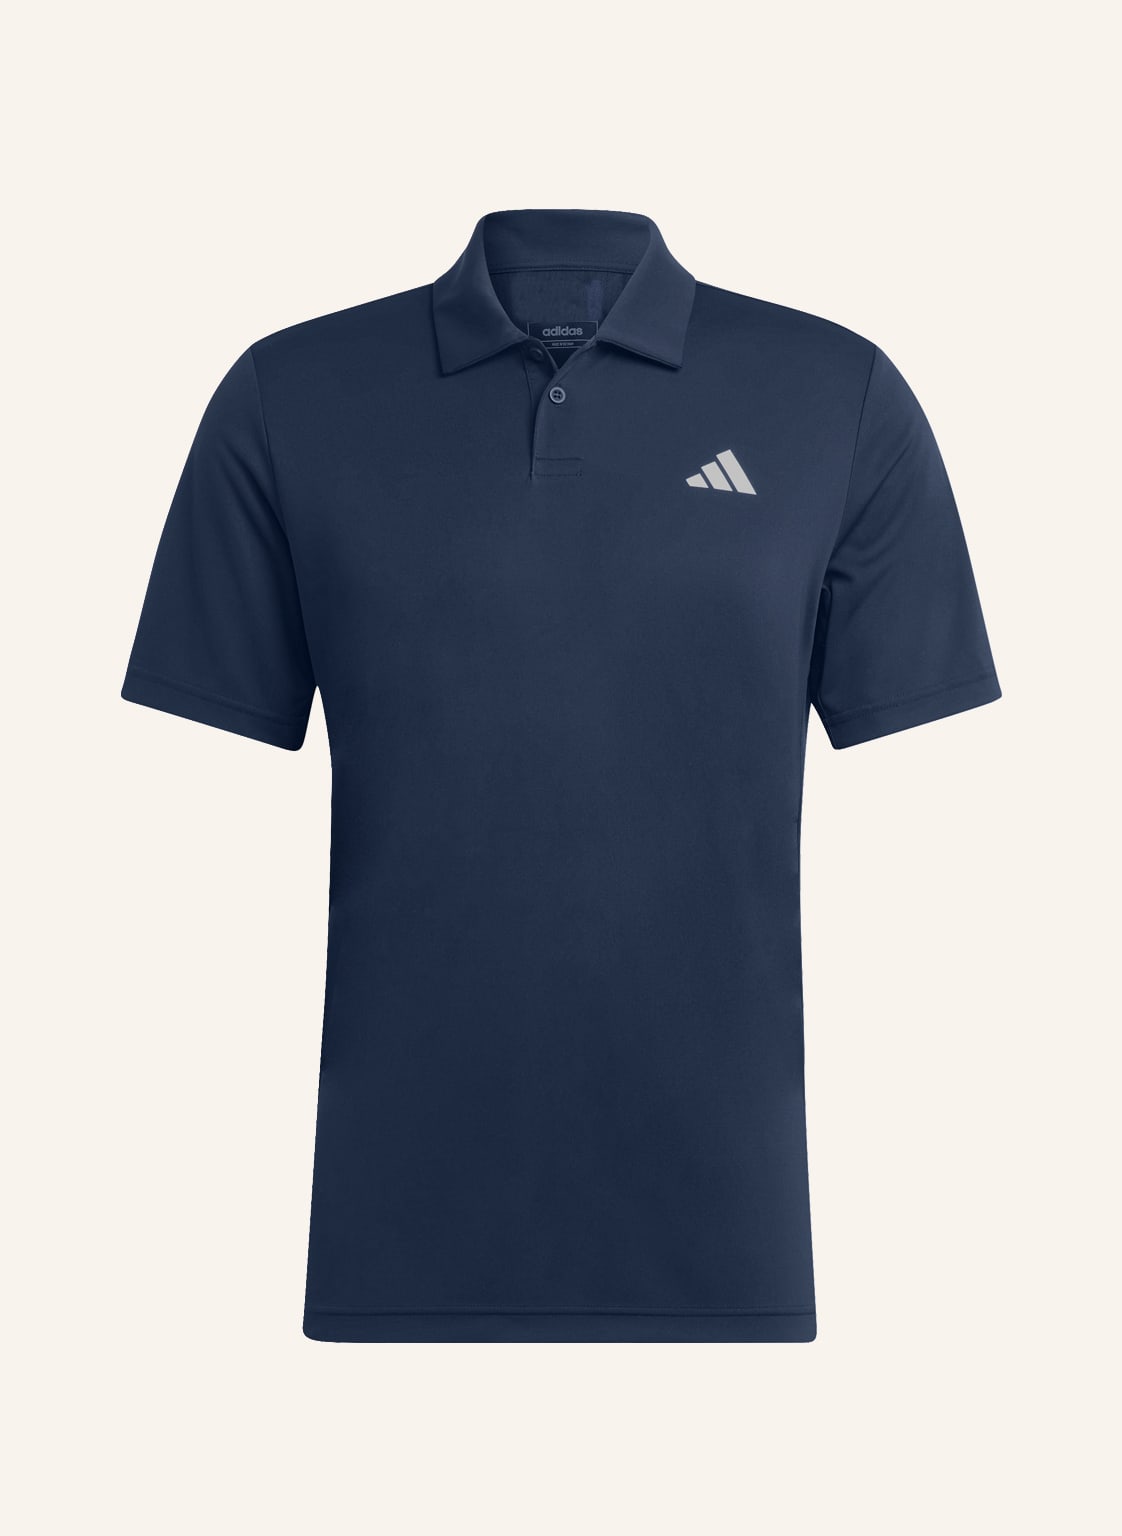 Image of Adidas Funktions-Poloshirt Club Polo Mit Mesh blau